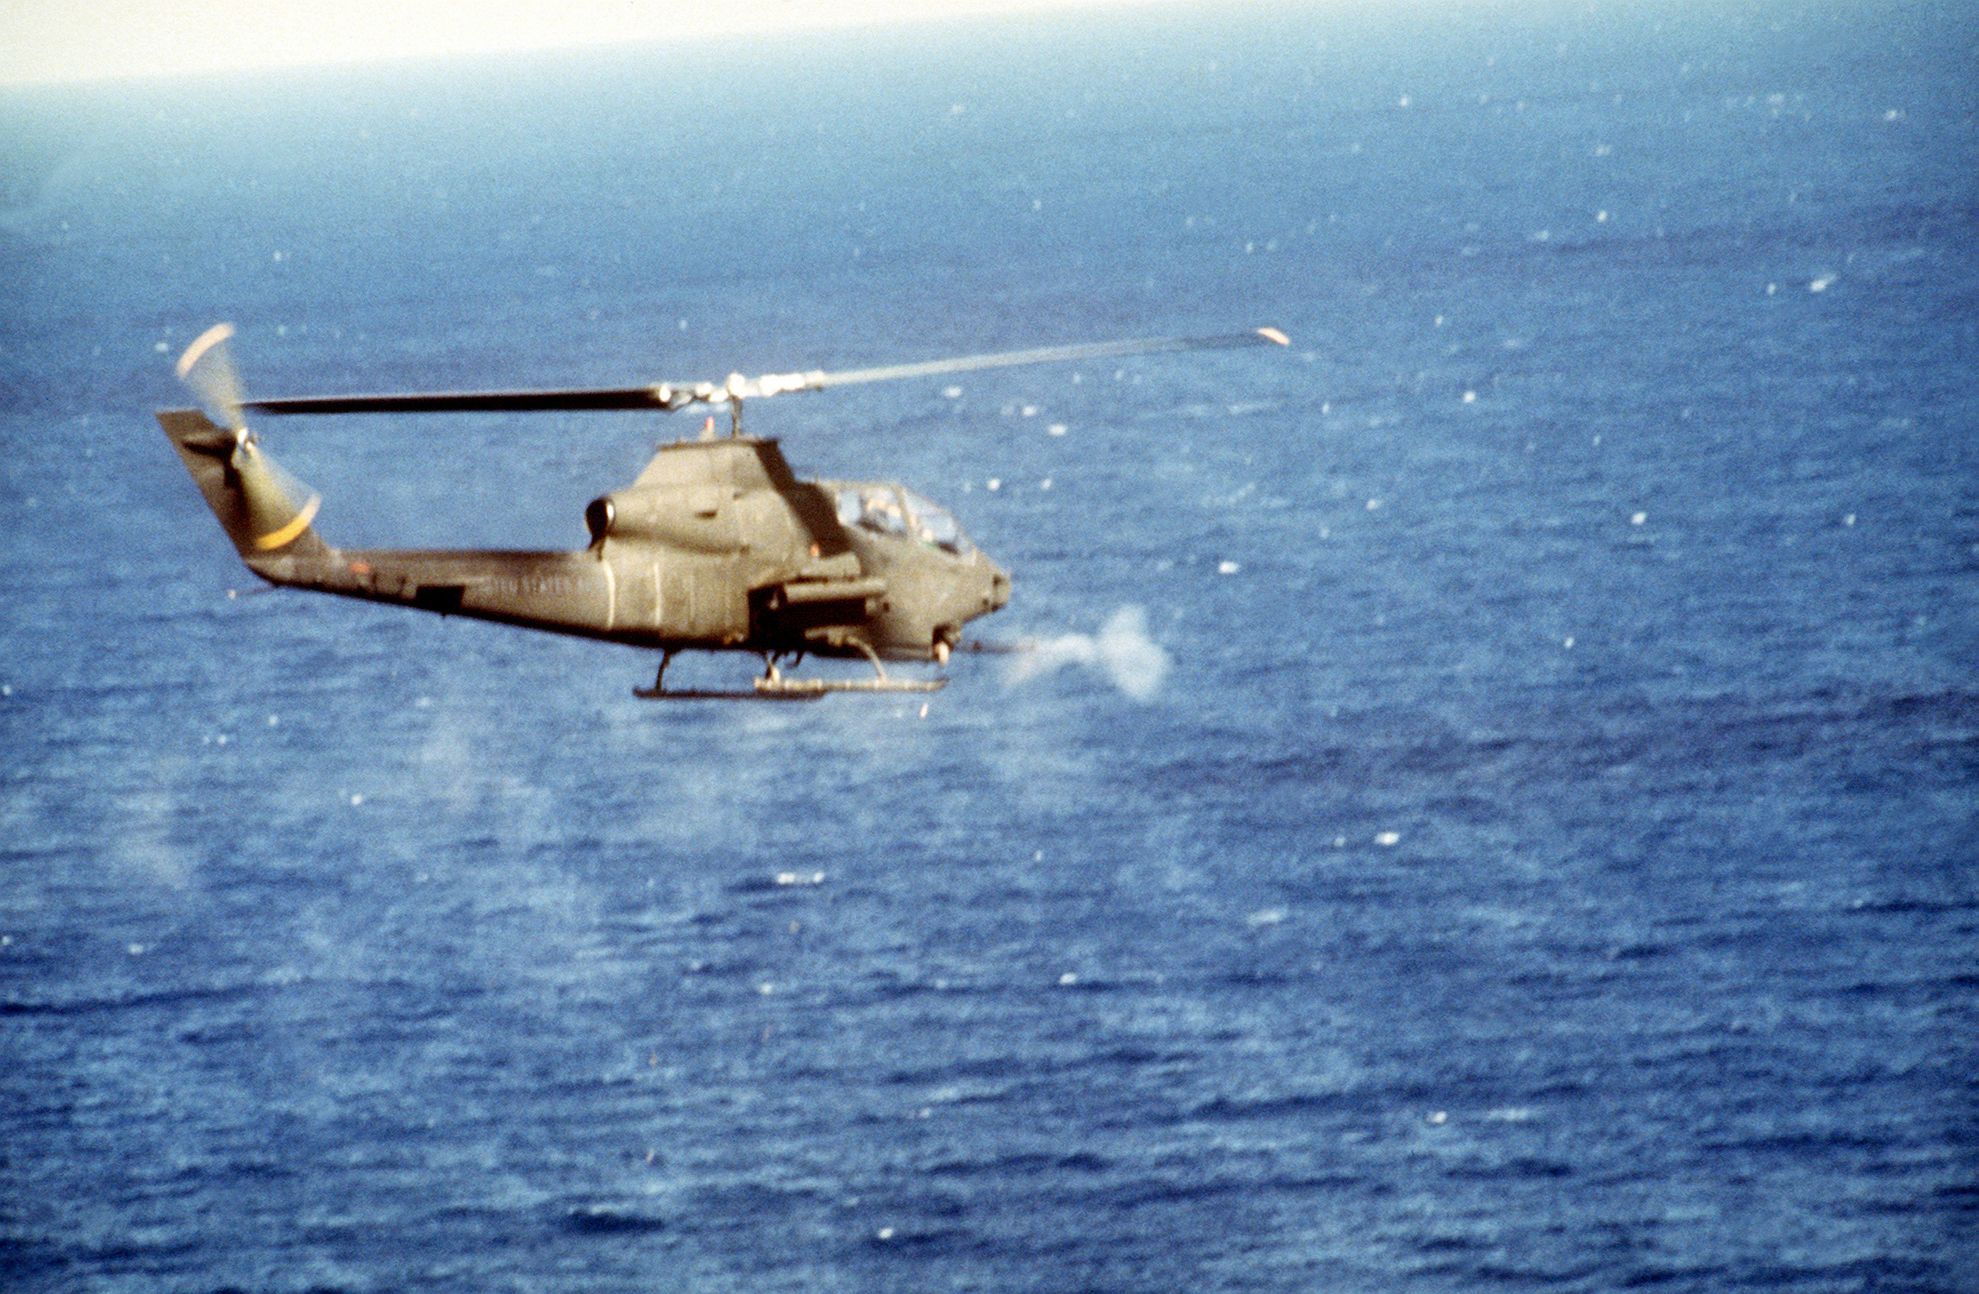 Fotogalerie / Operace Urgent Fury / Americká invaze na Grenadu v roce 1983 / Wiki